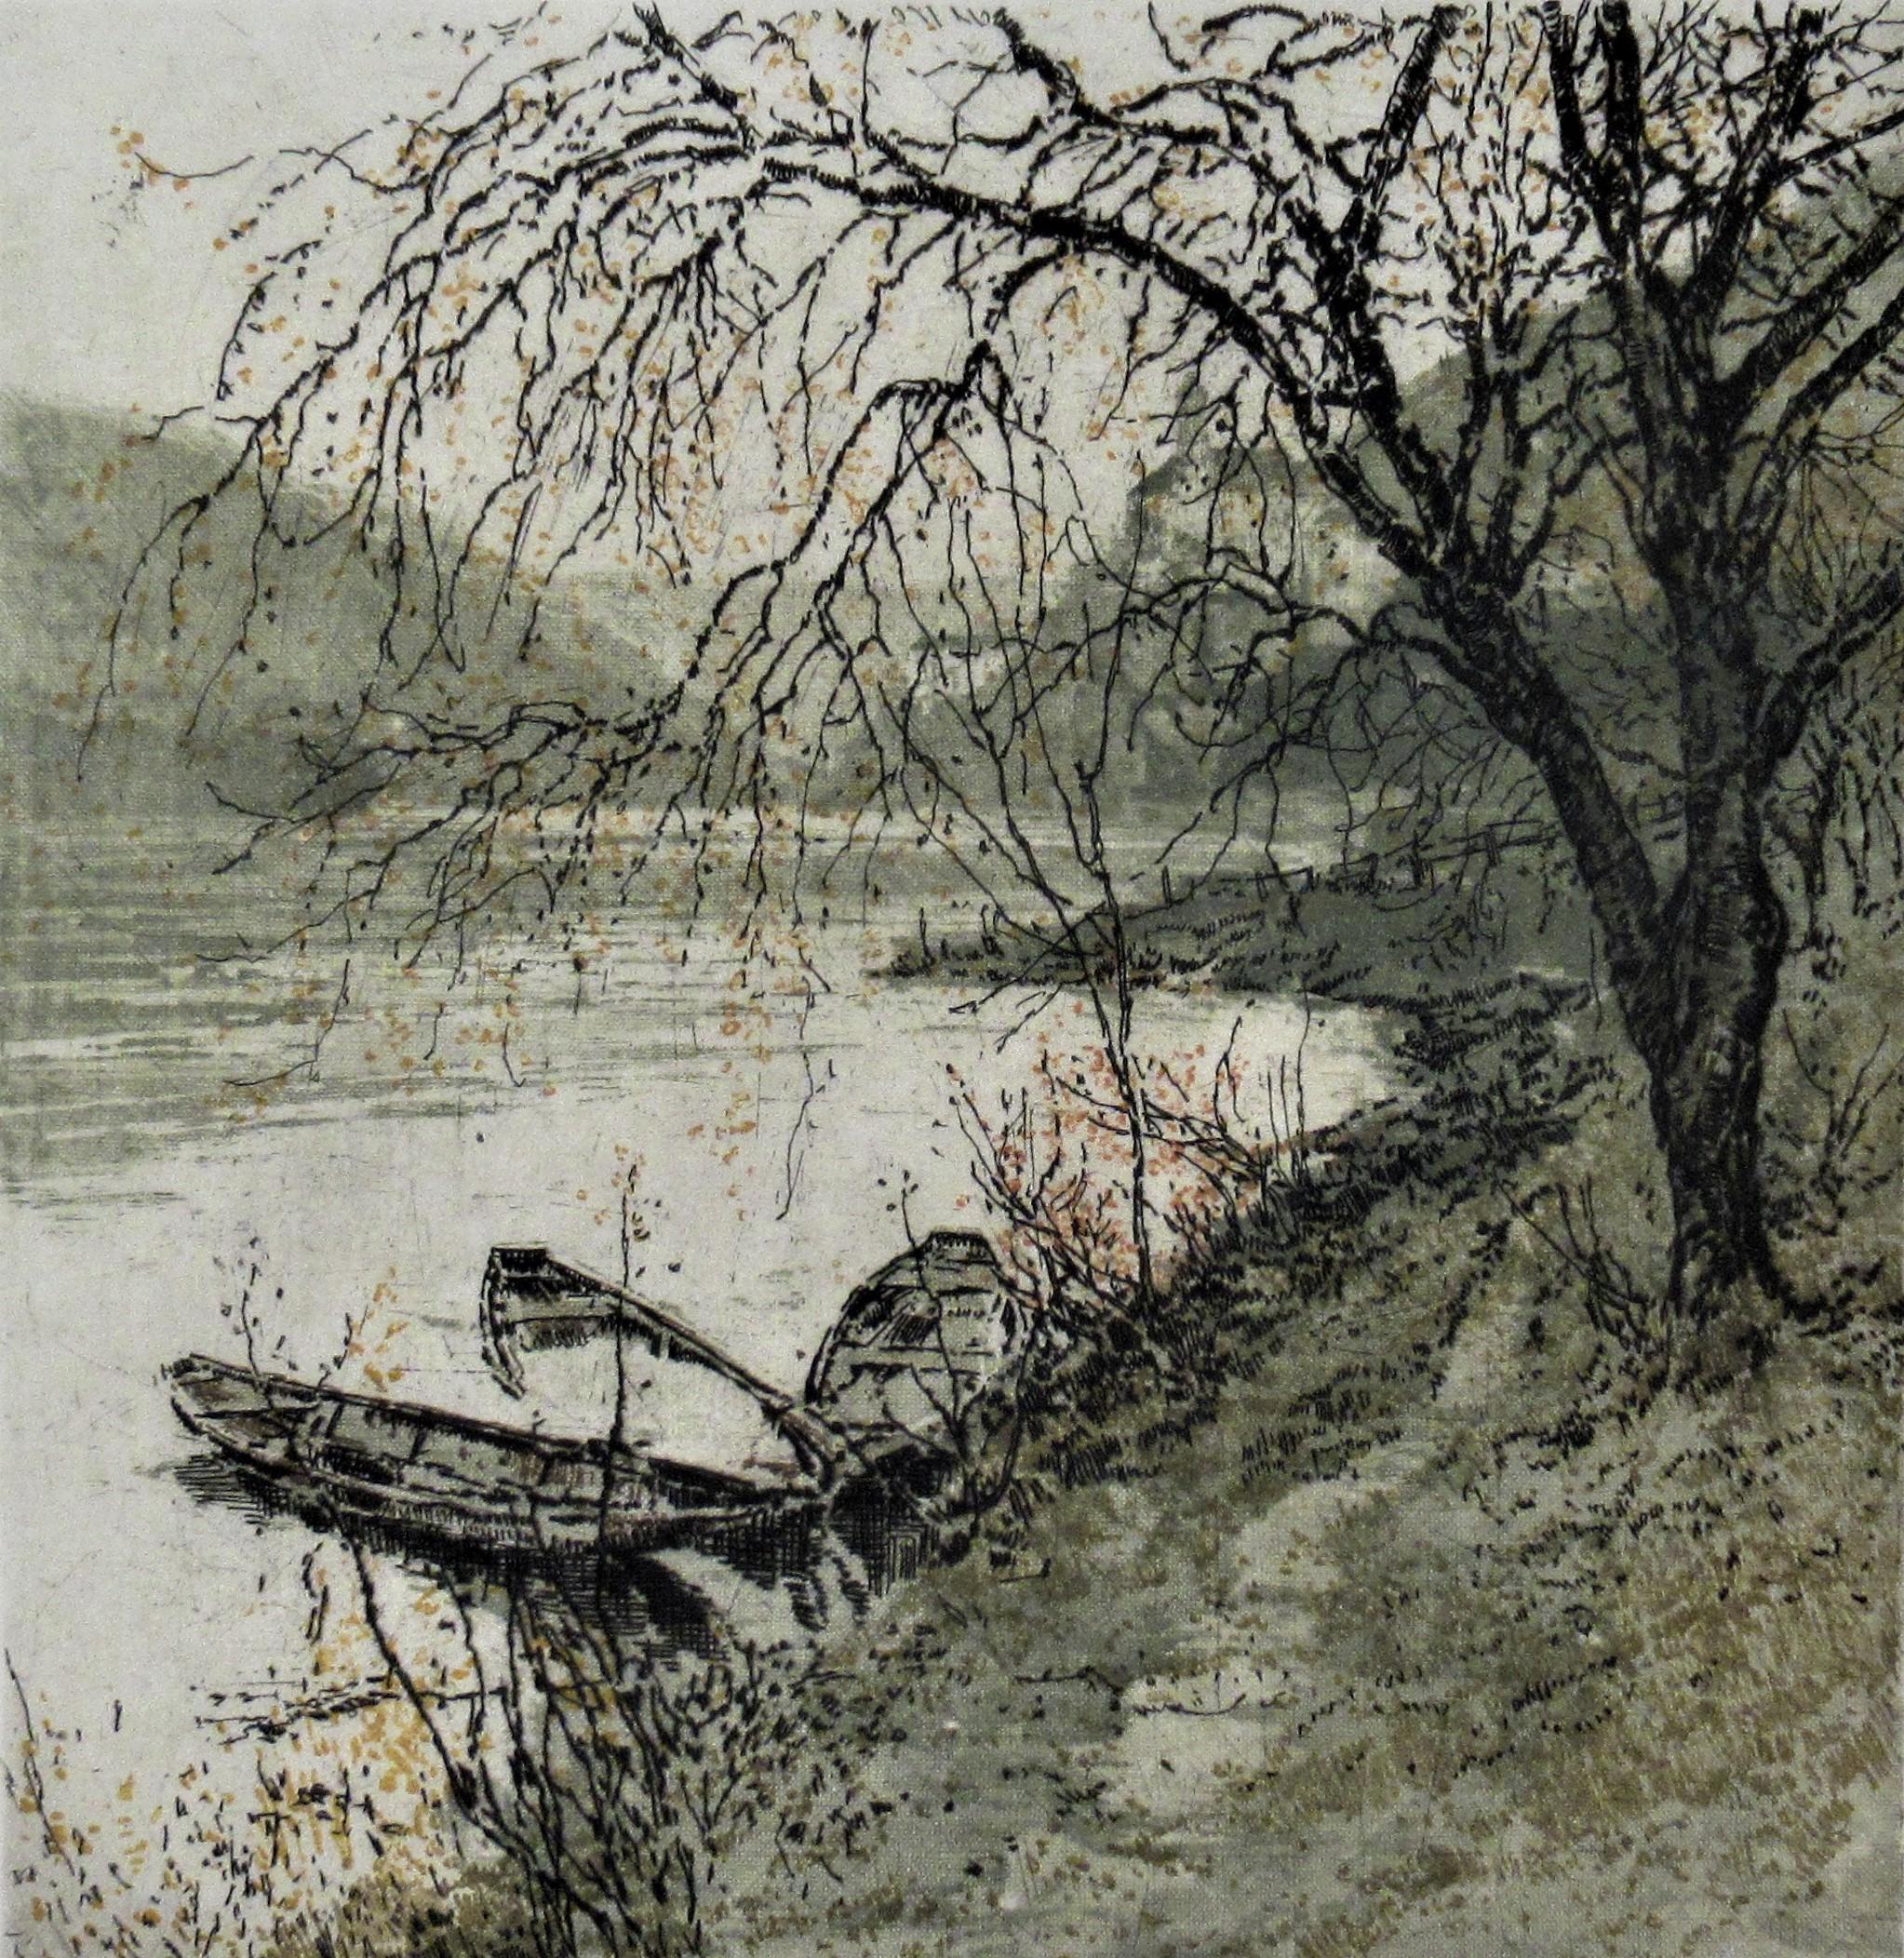 Danube - Print by Luigi Kasimir